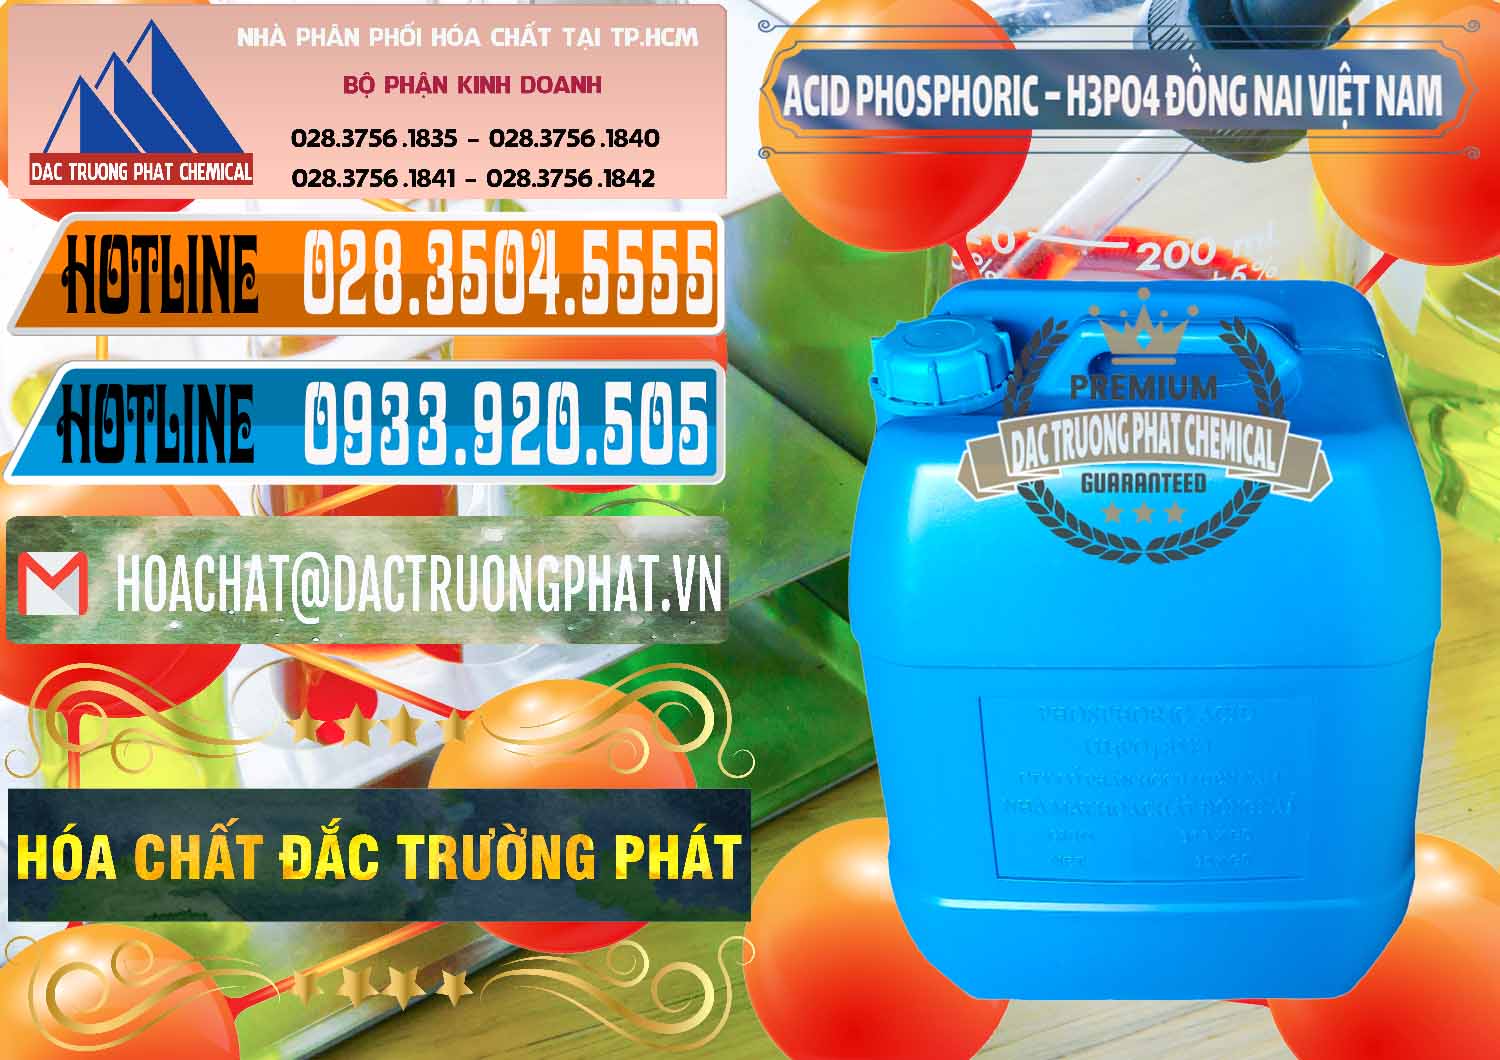 Chuyên kinh doanh _ cung cấp Acid Phosphoric – Axit Phosphoric 85% Đồng Nai Việt Nam - 0183 - Công ty bán và cung cấp hóa chất tại TP.HCM - stmp.net